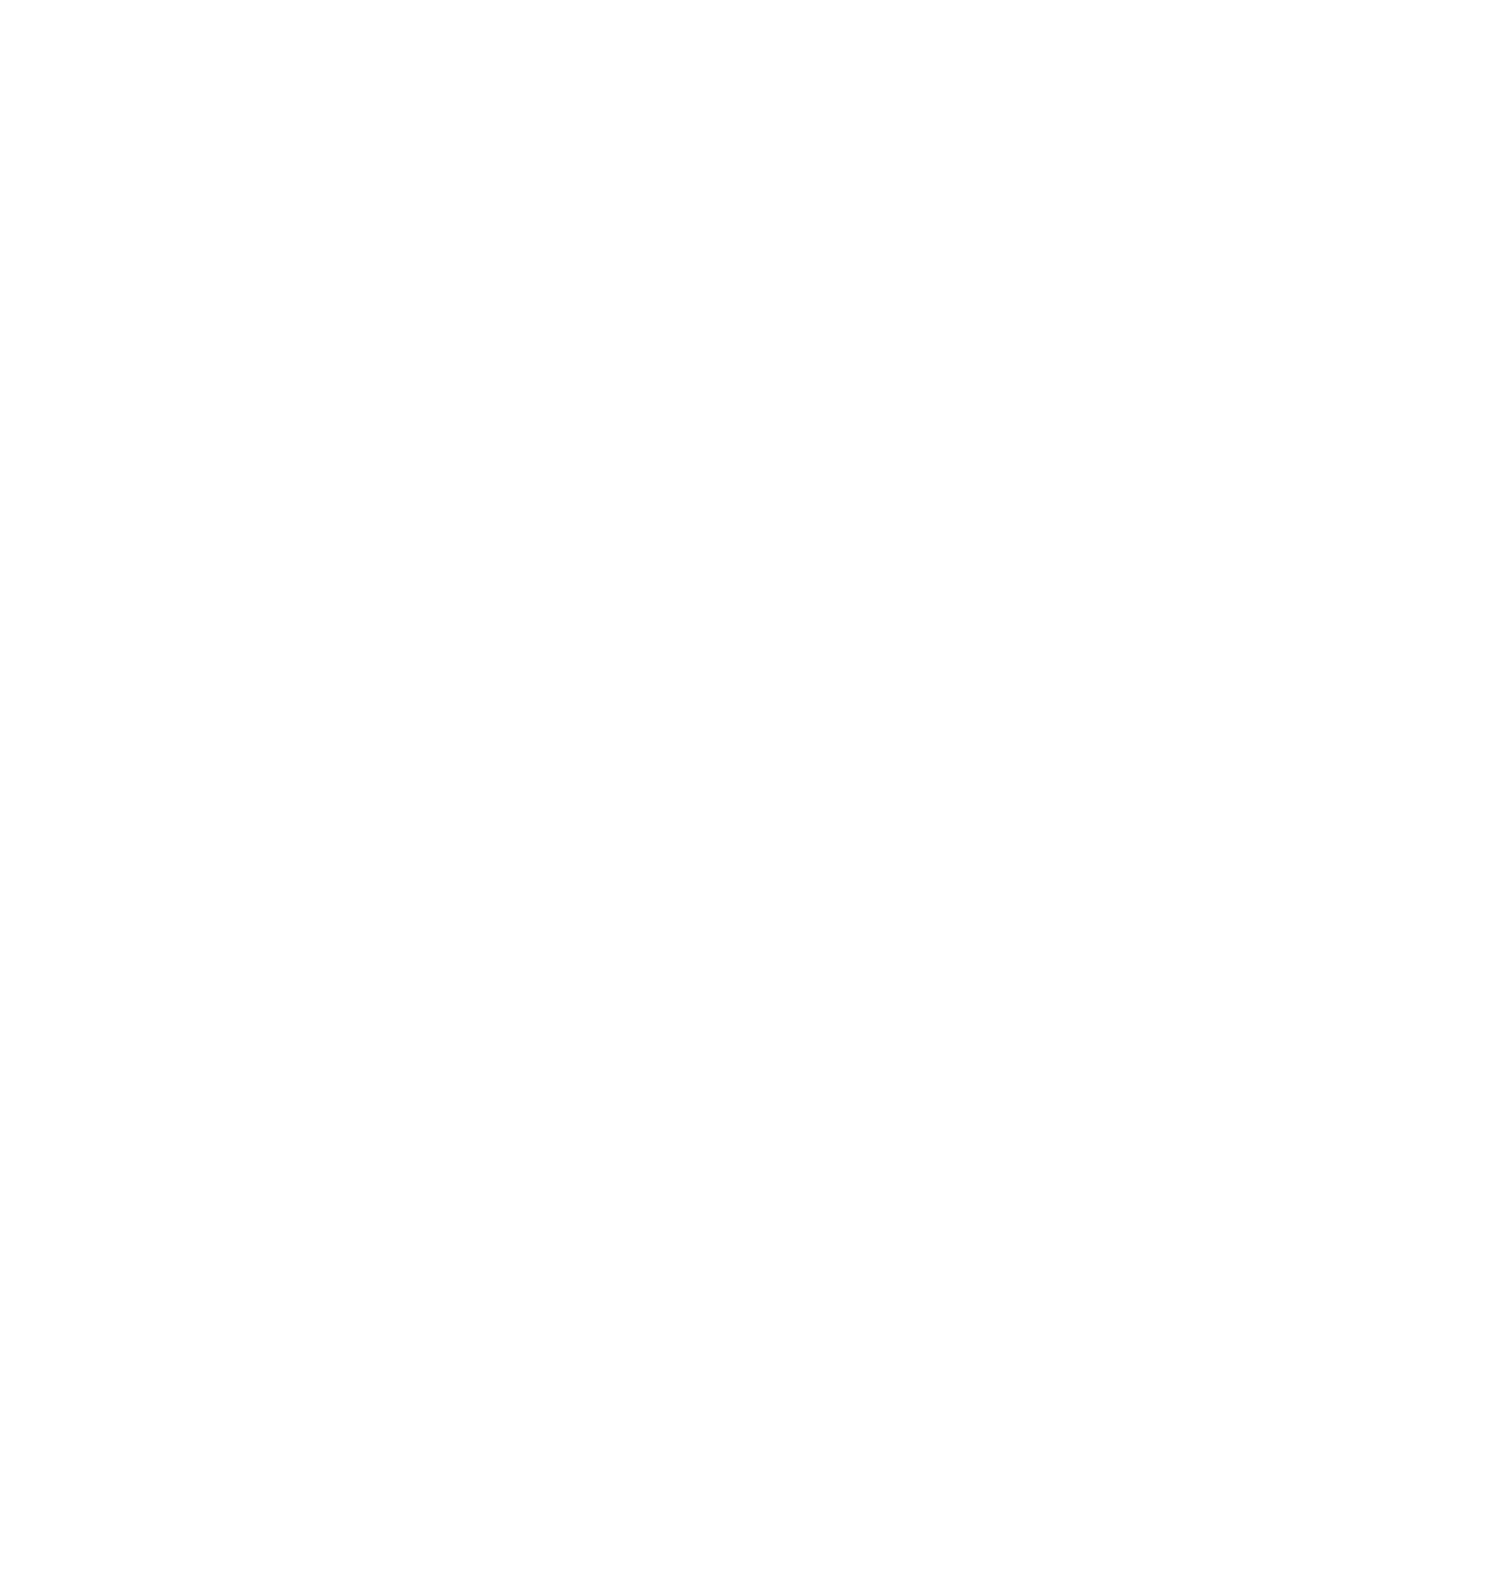 The Budding Elm